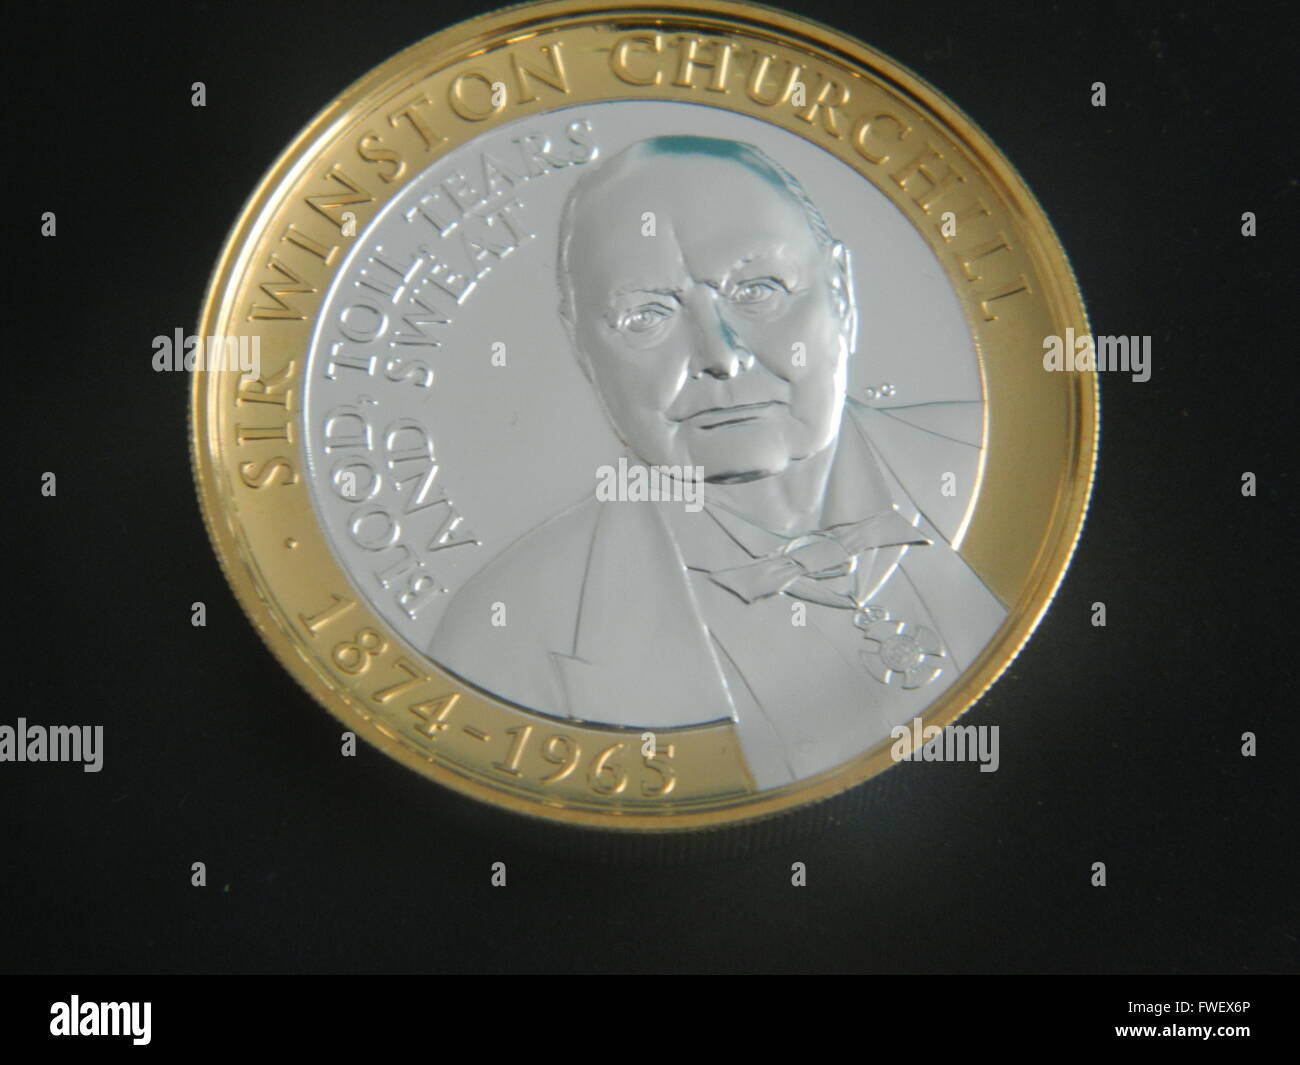 Winston Churchill commemorative coin Stock Photo